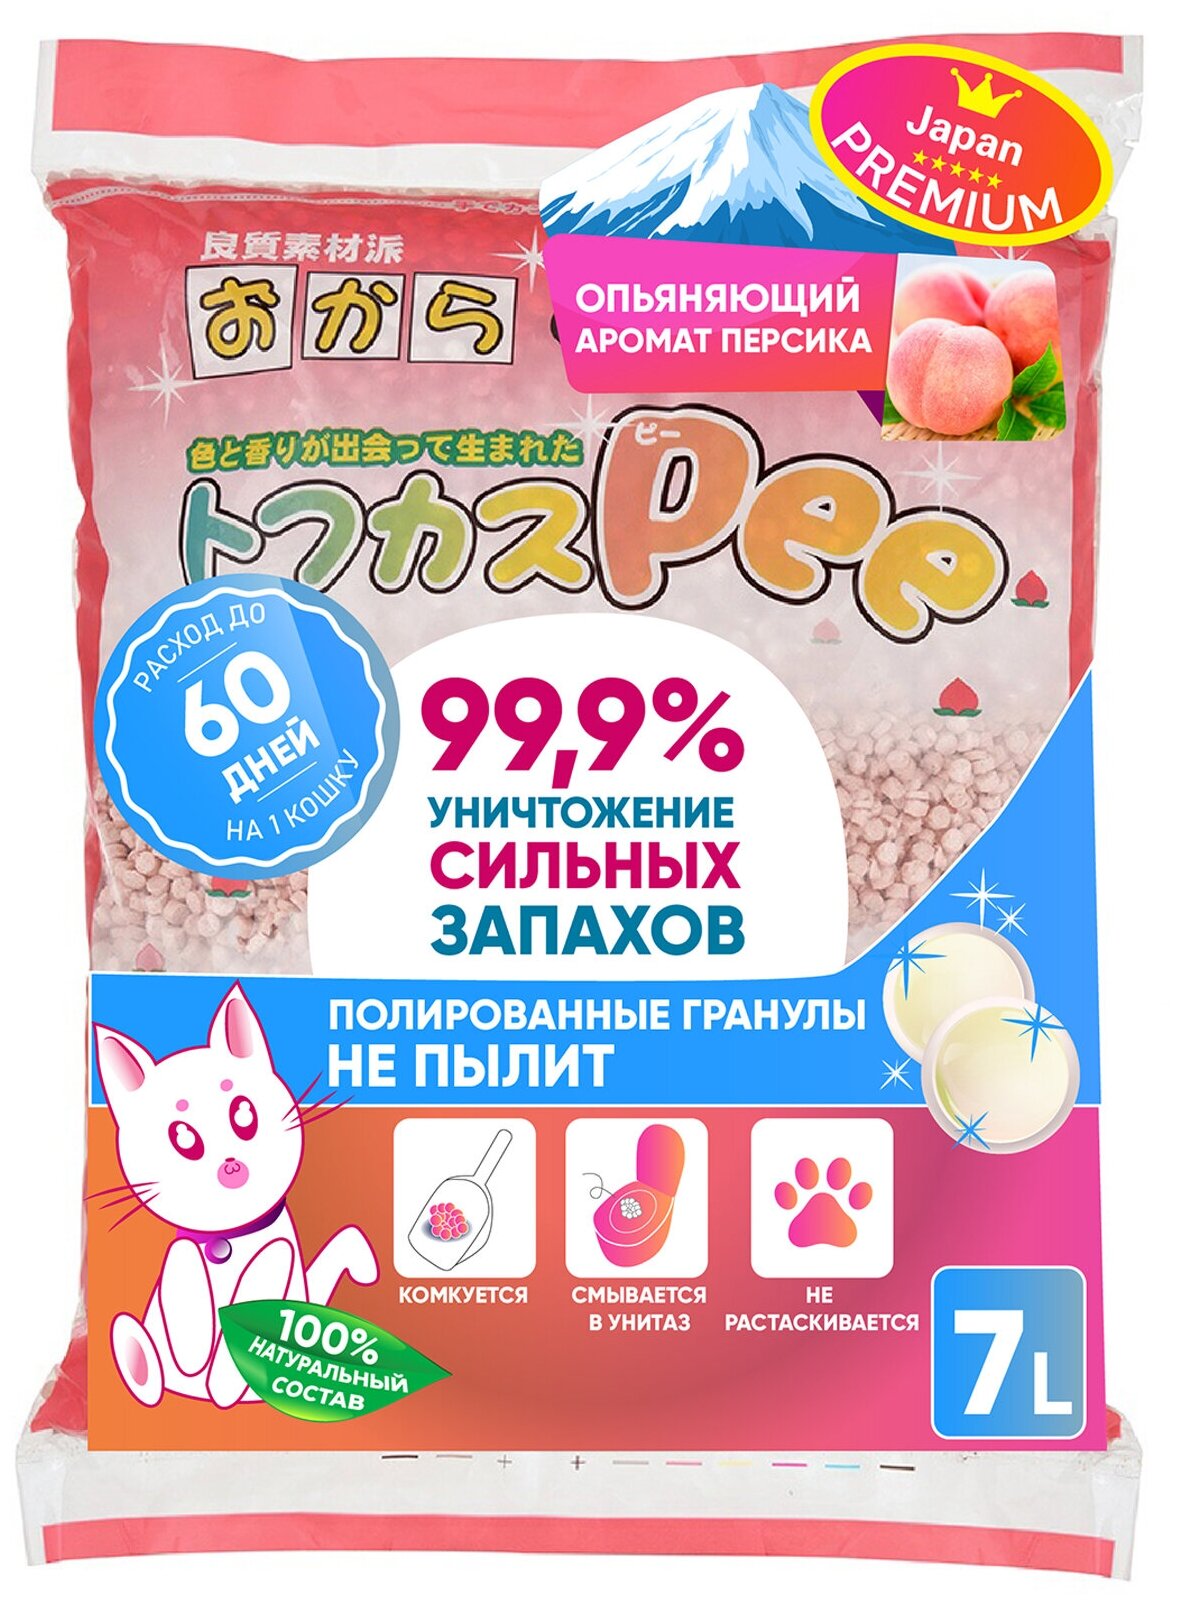 Наполнитель для кошачьего туалета Japan Premium Pet Тофу с натуральным персиком, комкуется и смывается в туалет, 7 литров